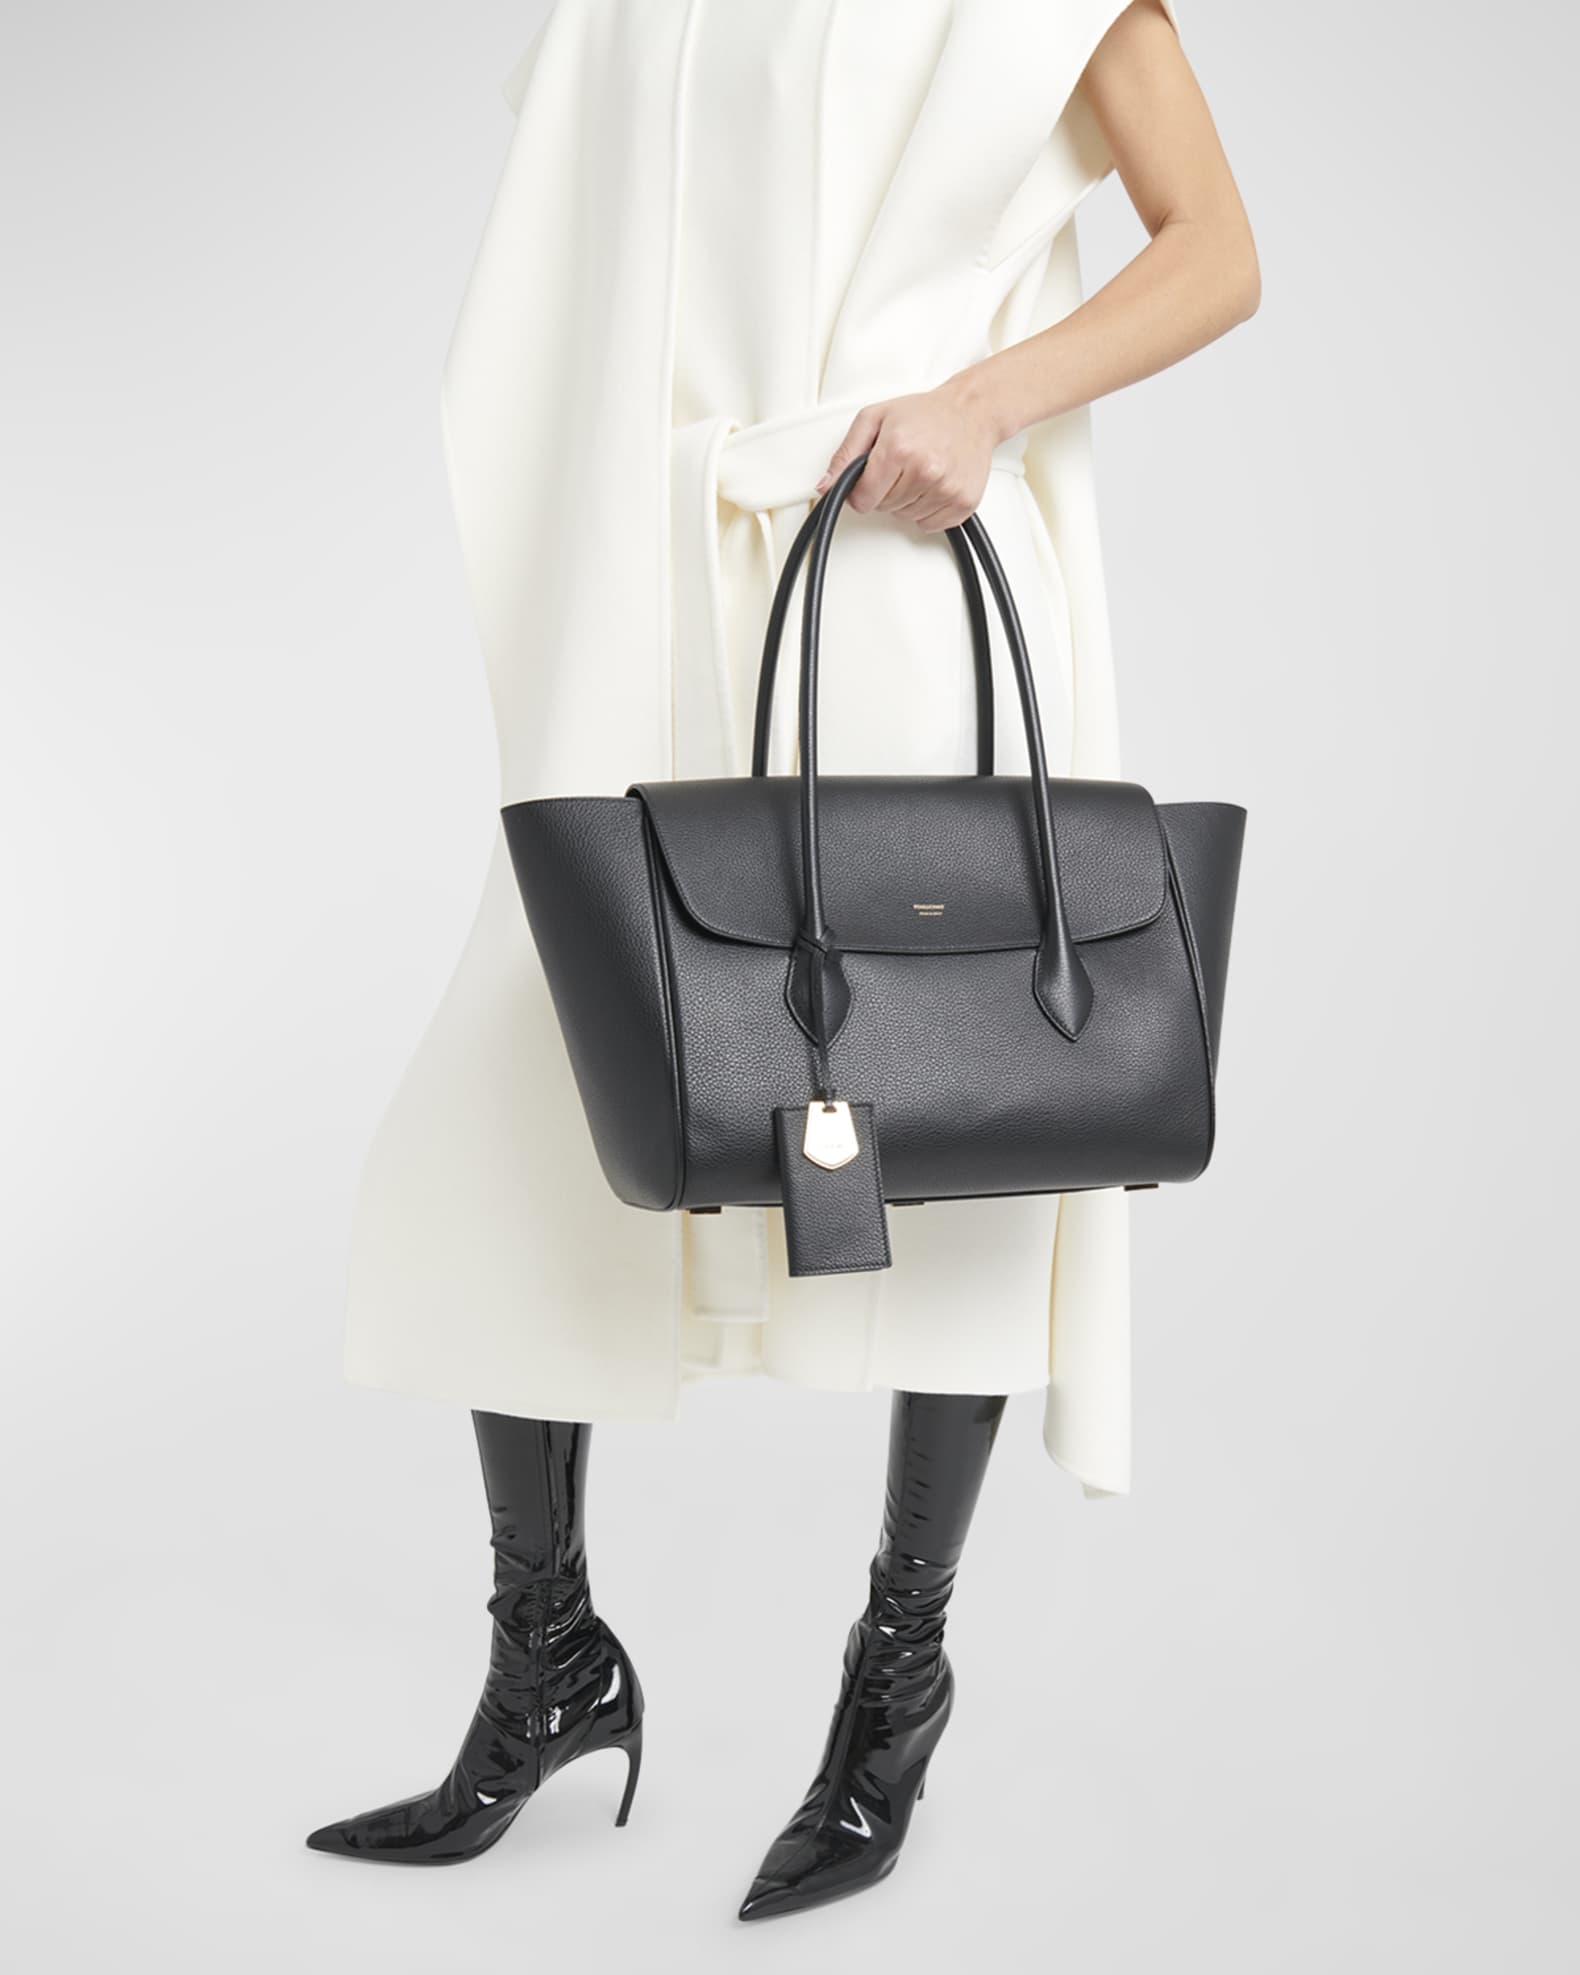 Ferragamo Classic Flap Leather Tote Bag | Neiman Marcus